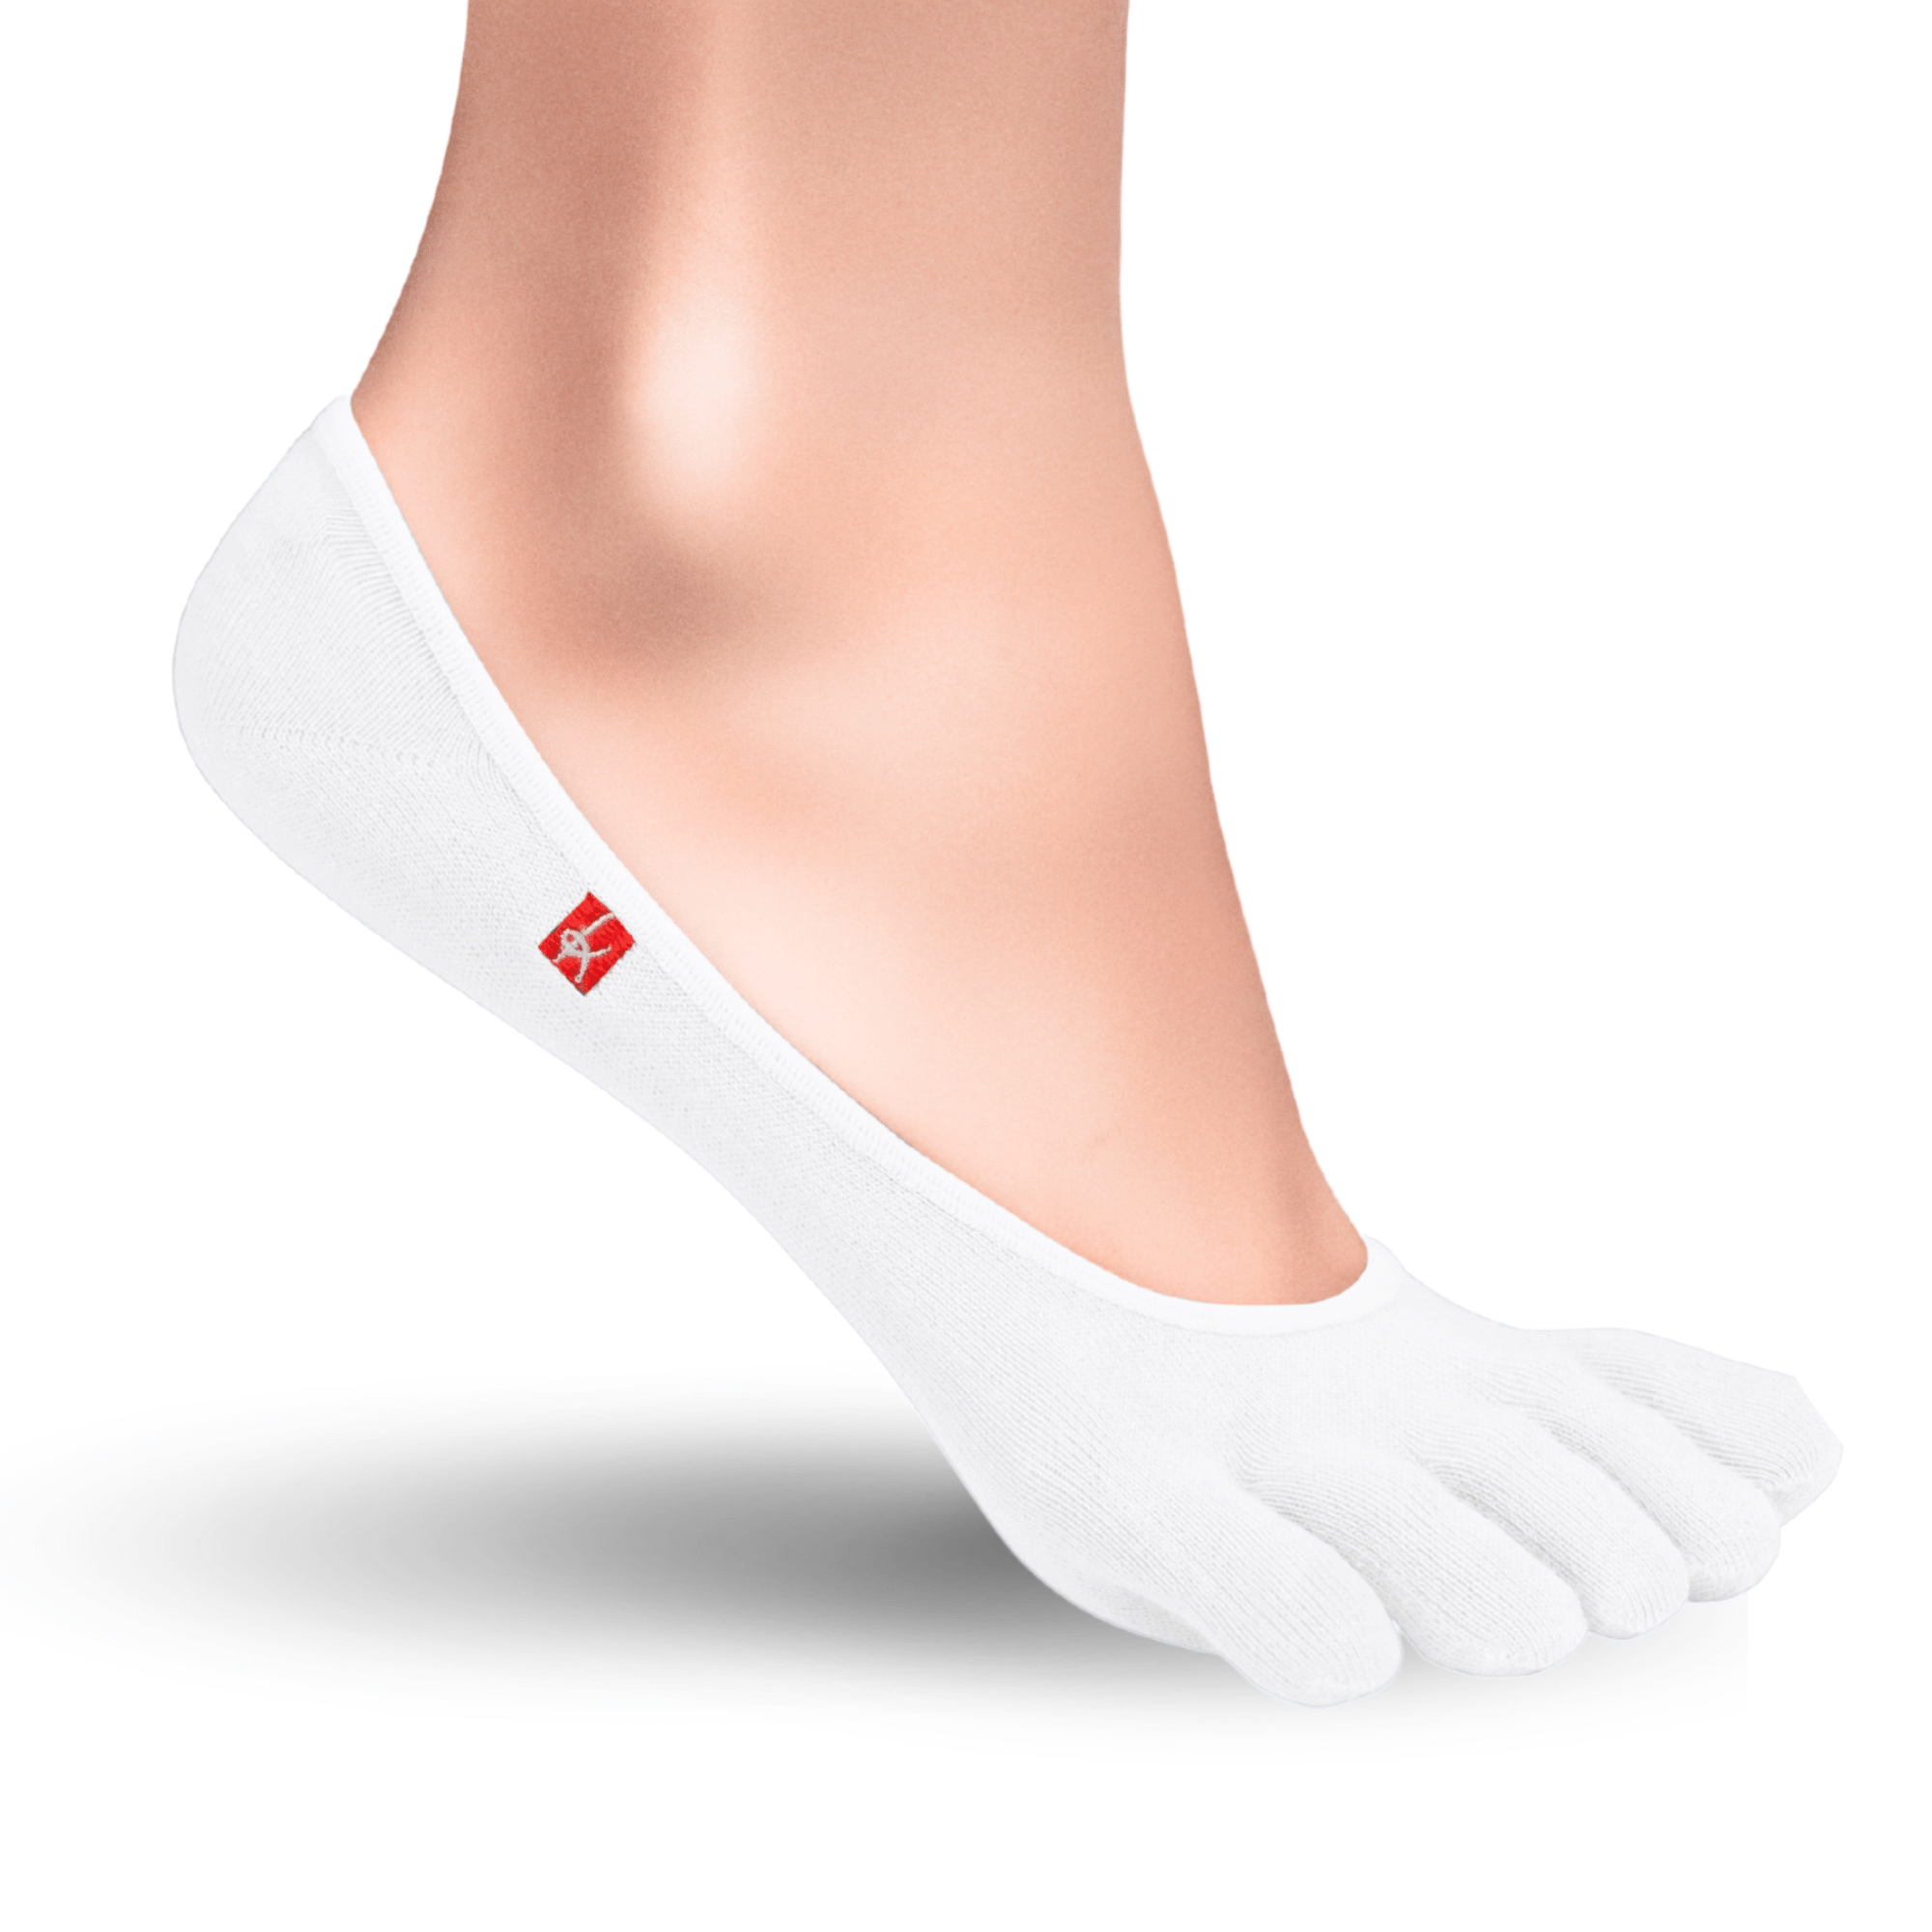 Knitido Zero Coolmax toe socks ladies toe socks in white